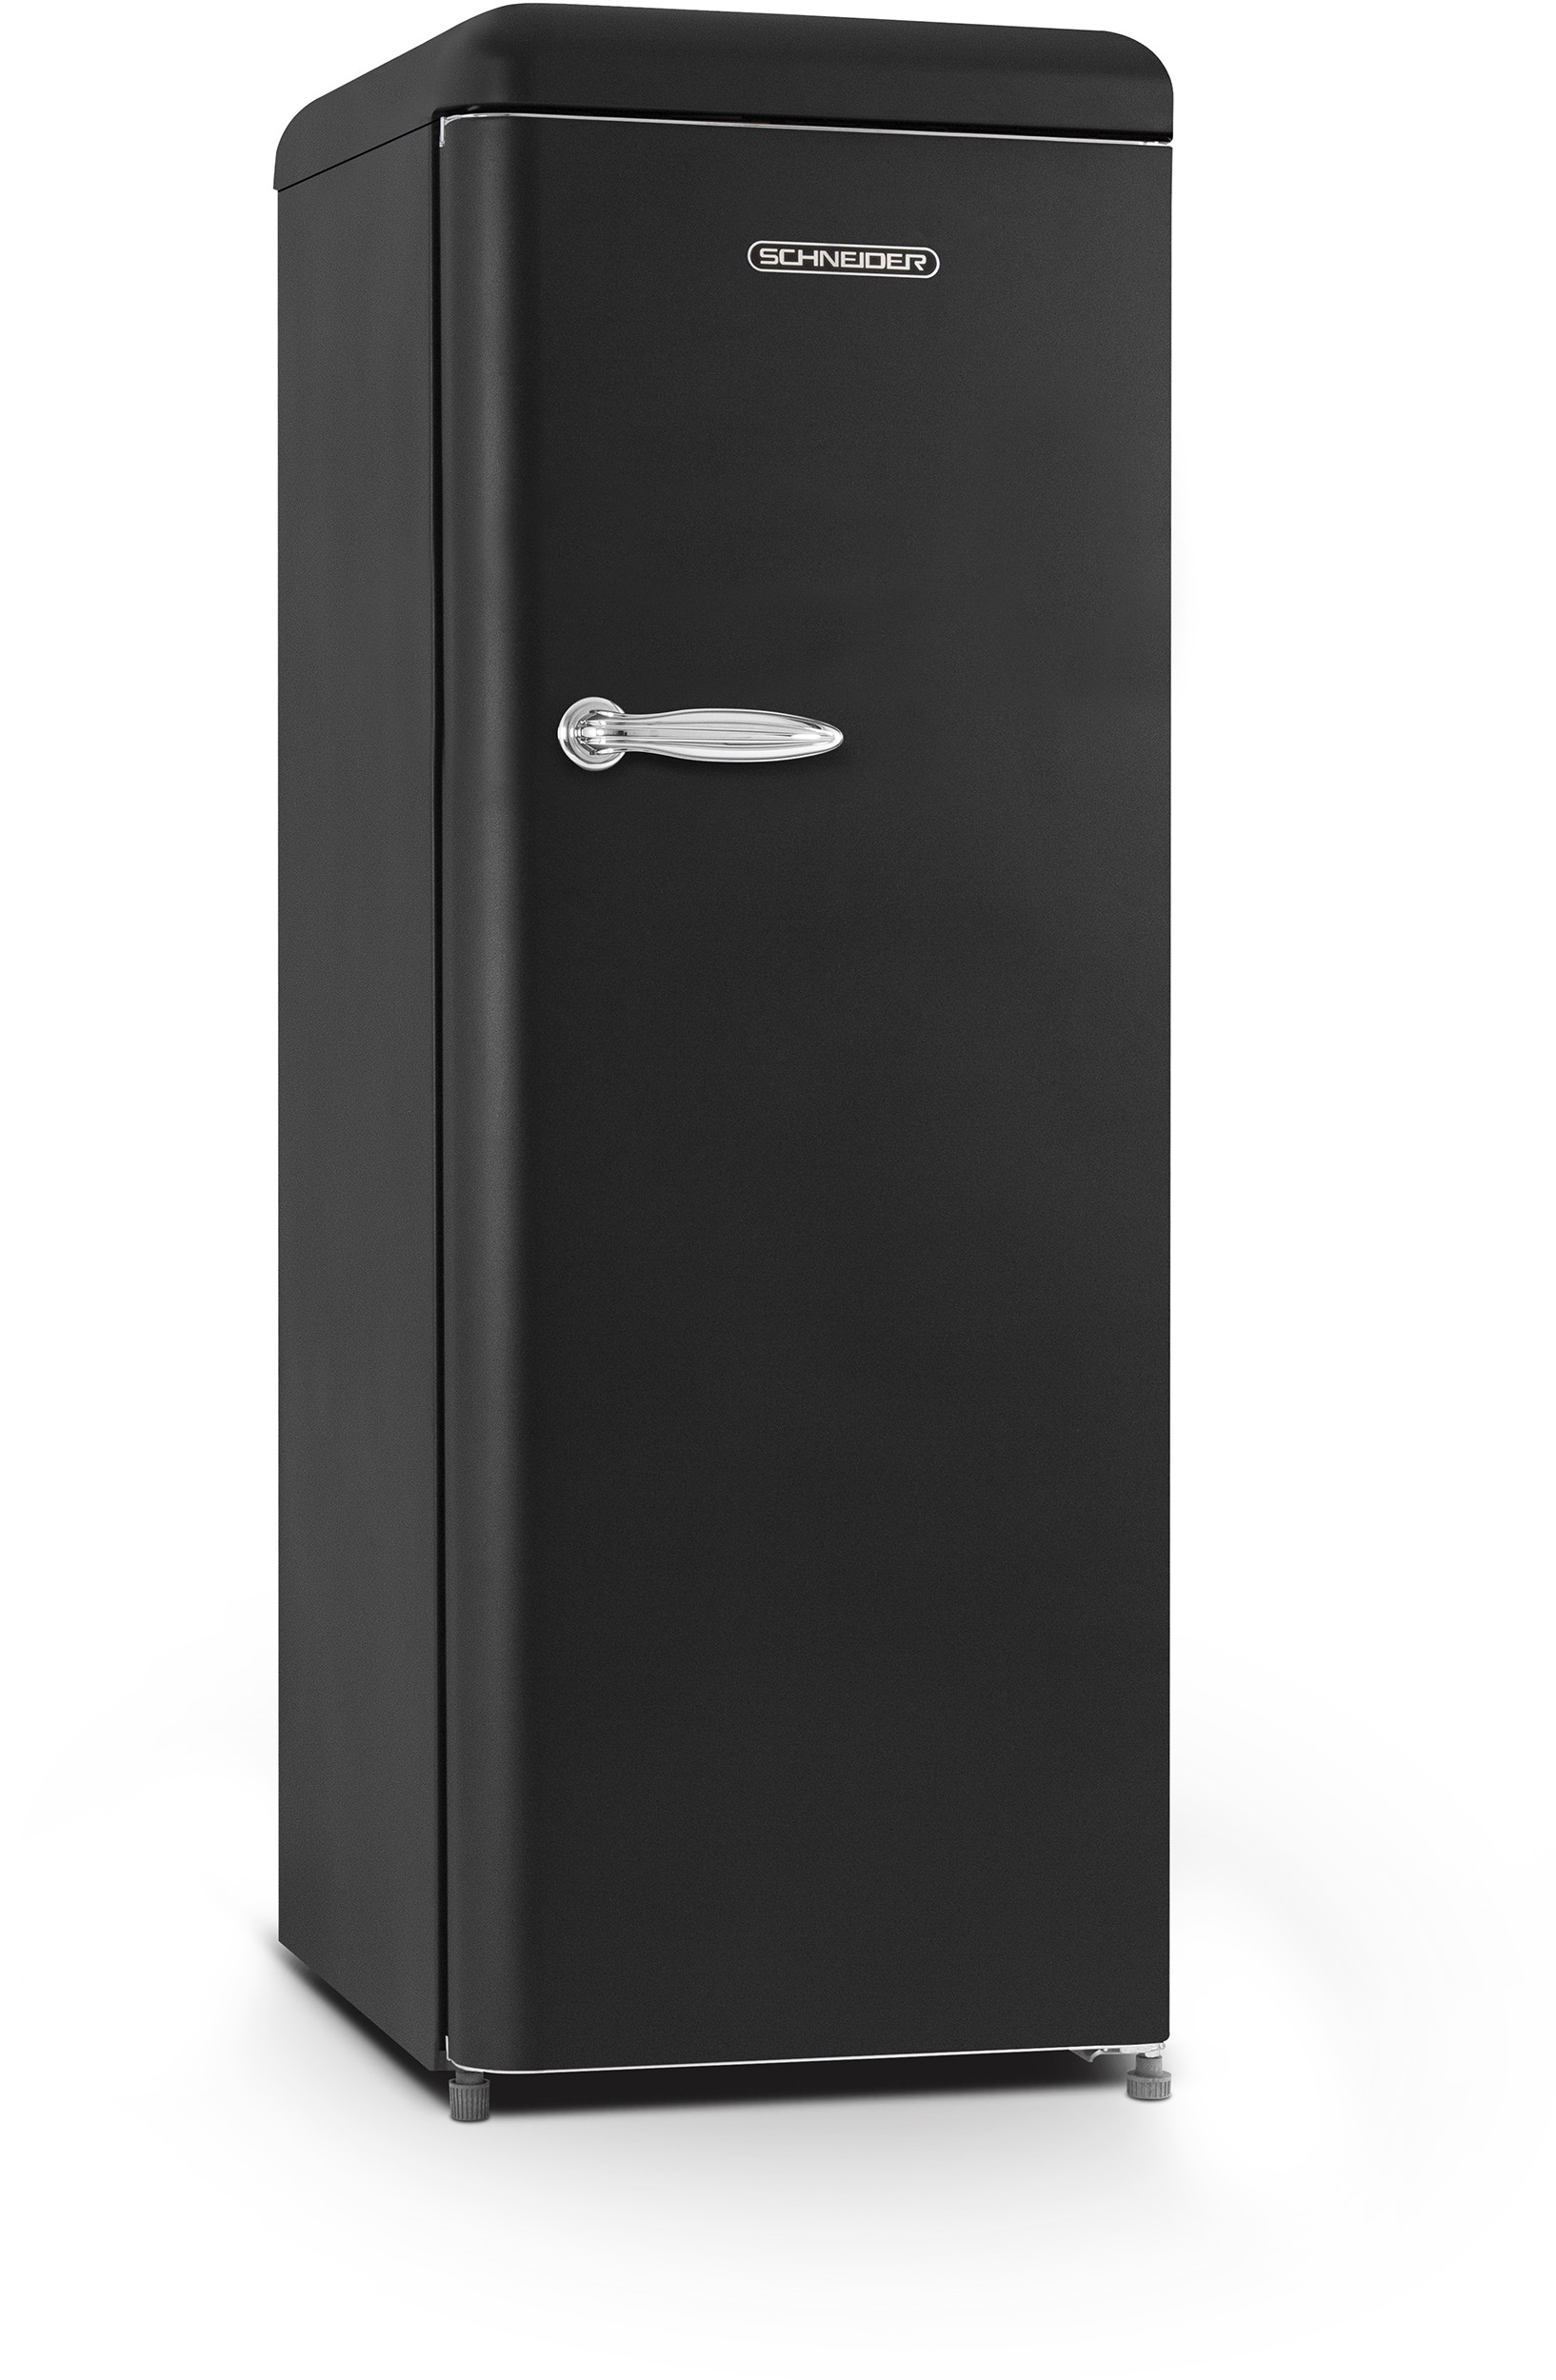 SCHNEIDER Réfrigérateur 1 porte Vintage Froid Statique 225L Noir